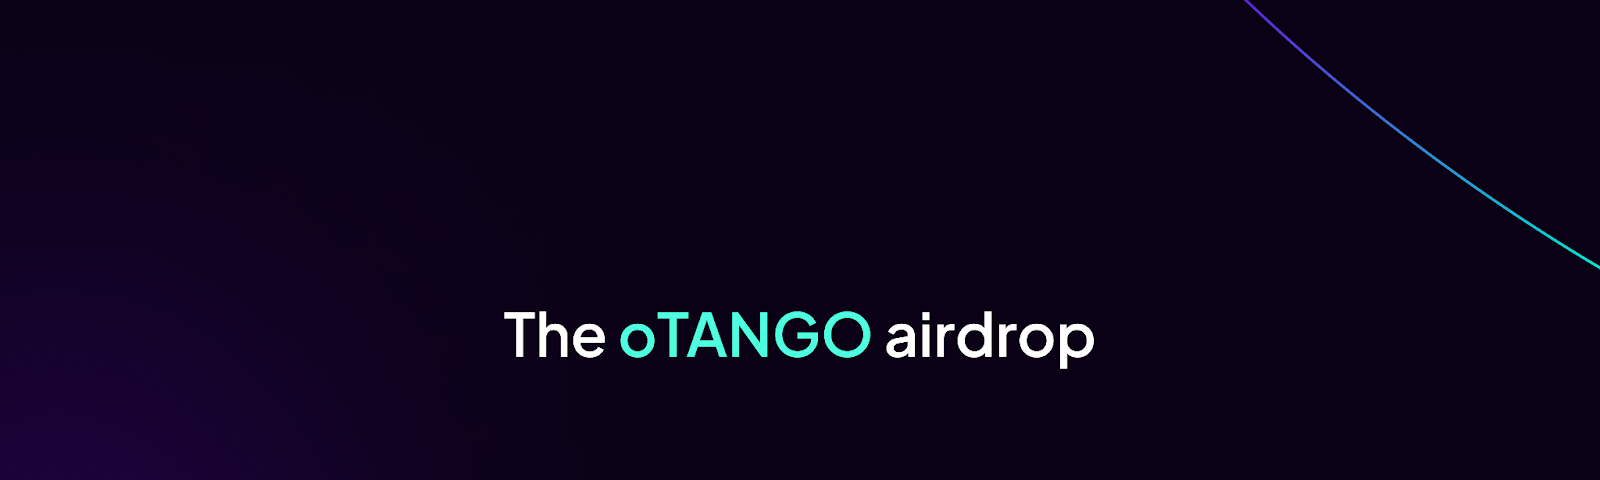 The oTANGO airdrop